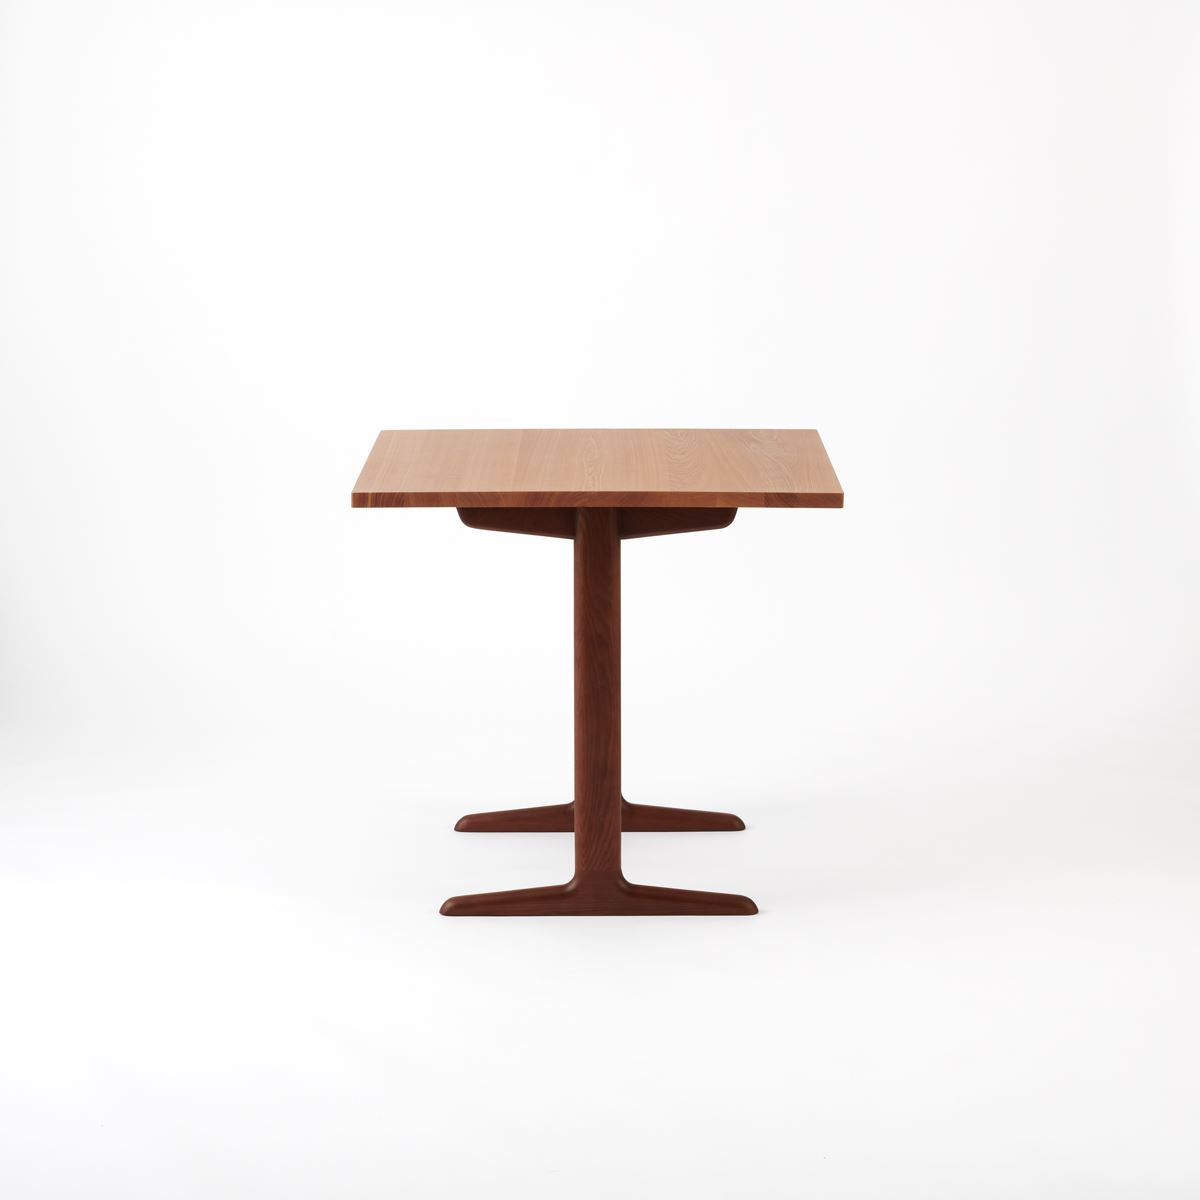 KUUM  Table W800 × D800 - アッシュ無垢材ナチュラル / クーム テーブル